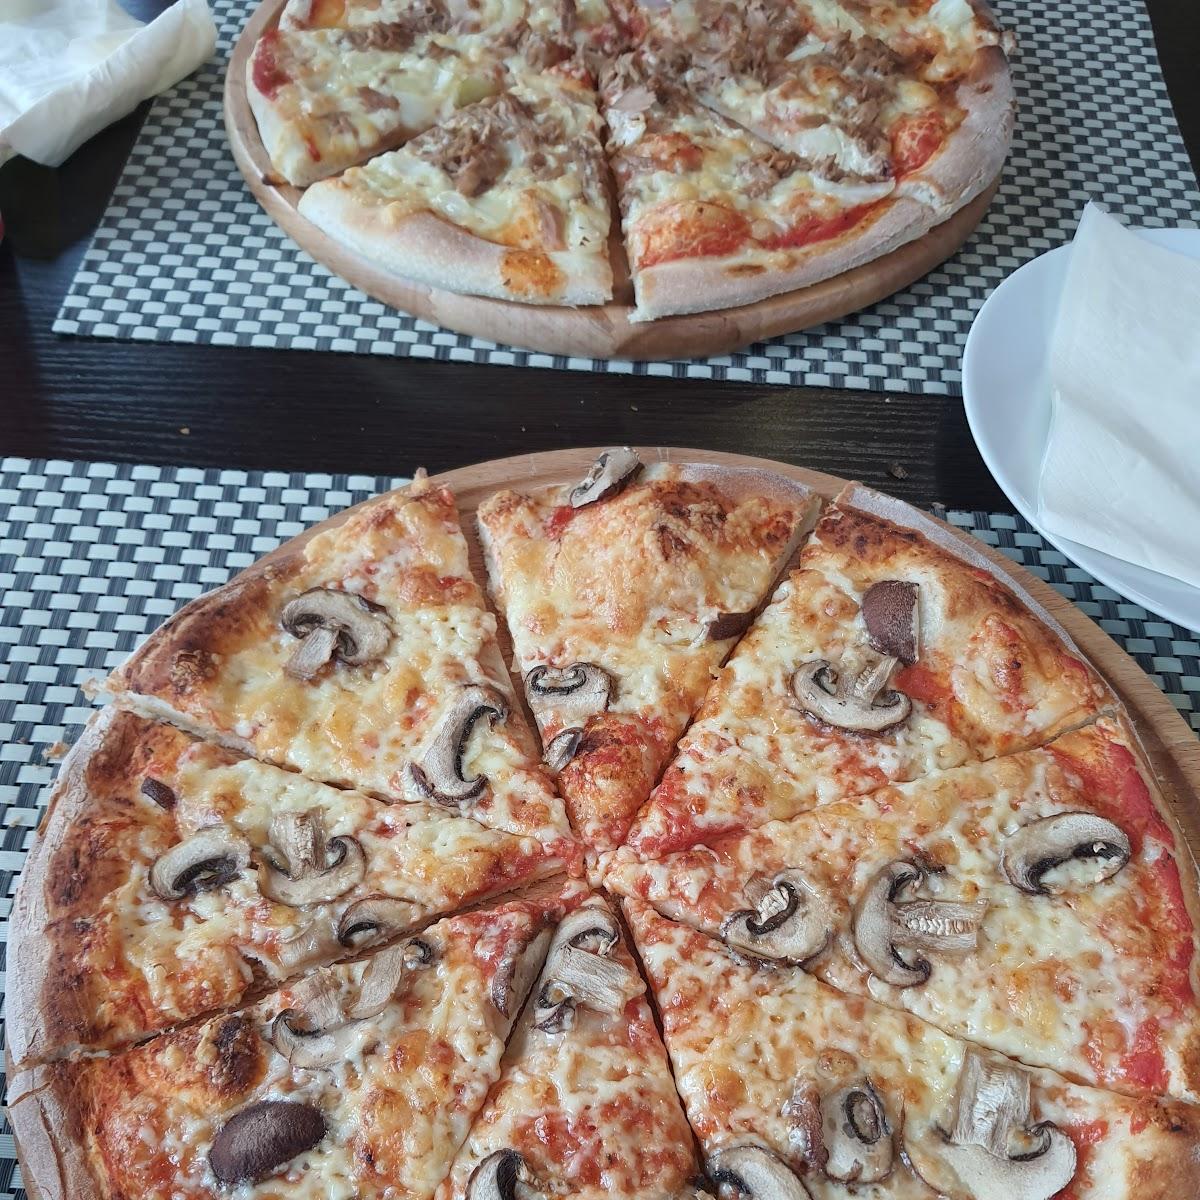 Restaurant "Pizza" in Rheinbrohl